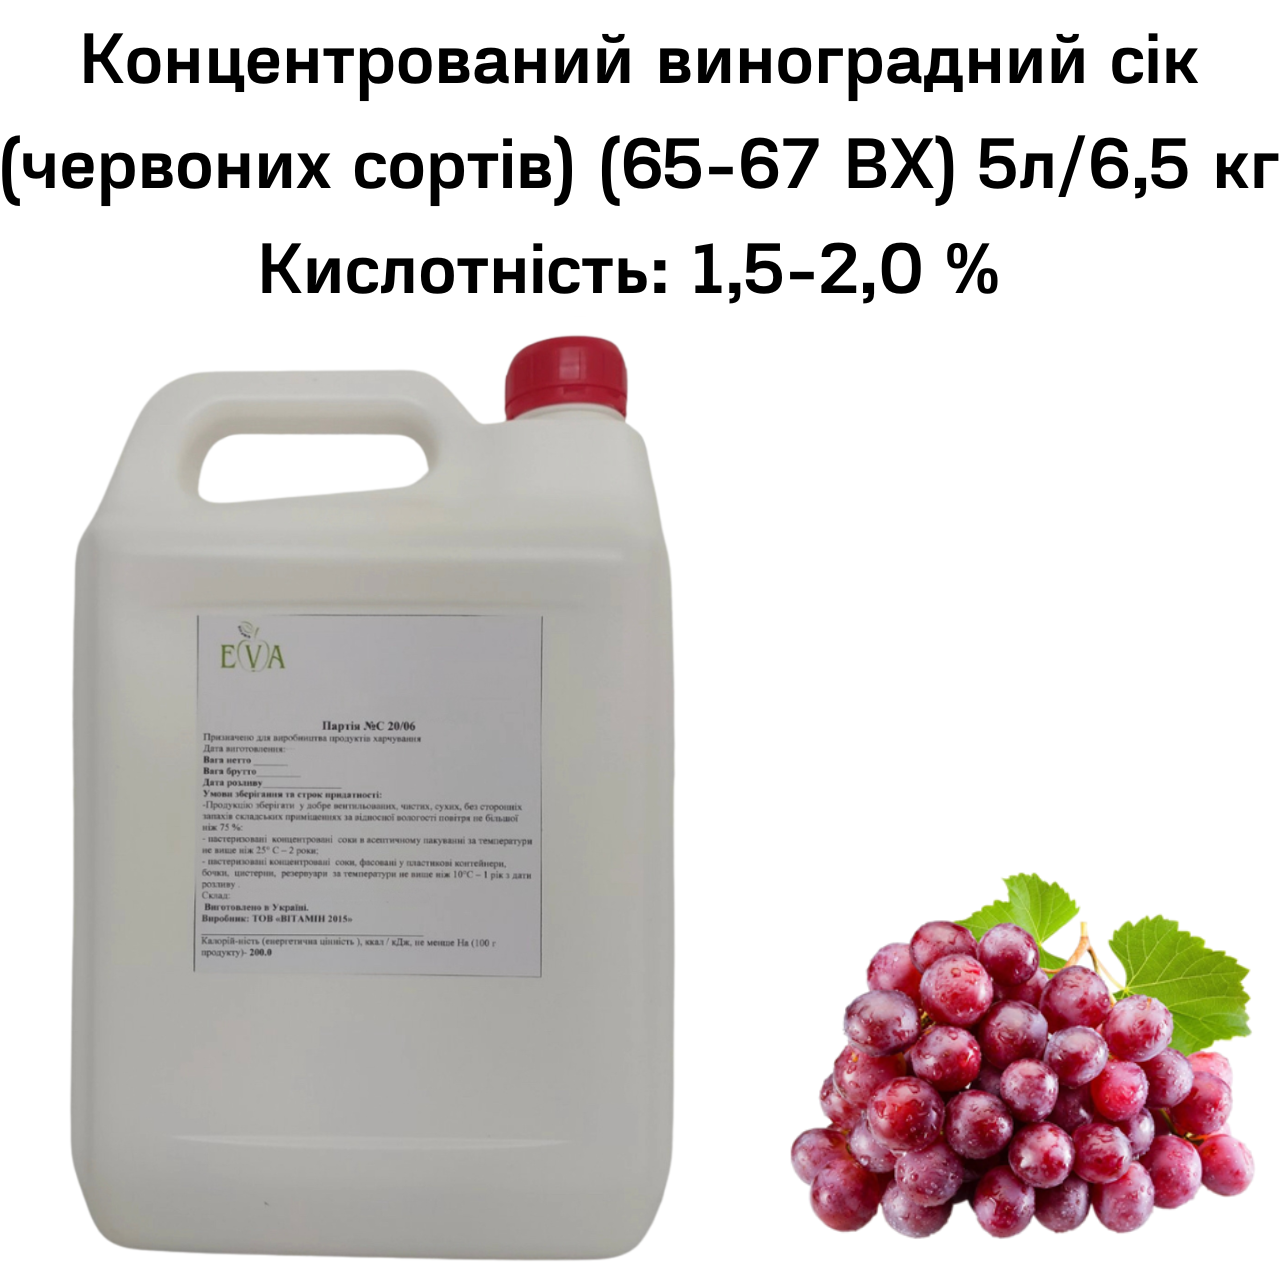 Концентрований виноградний сік (червоних сортів) (65-67 ВХ) каністра 5л/6,5 кг